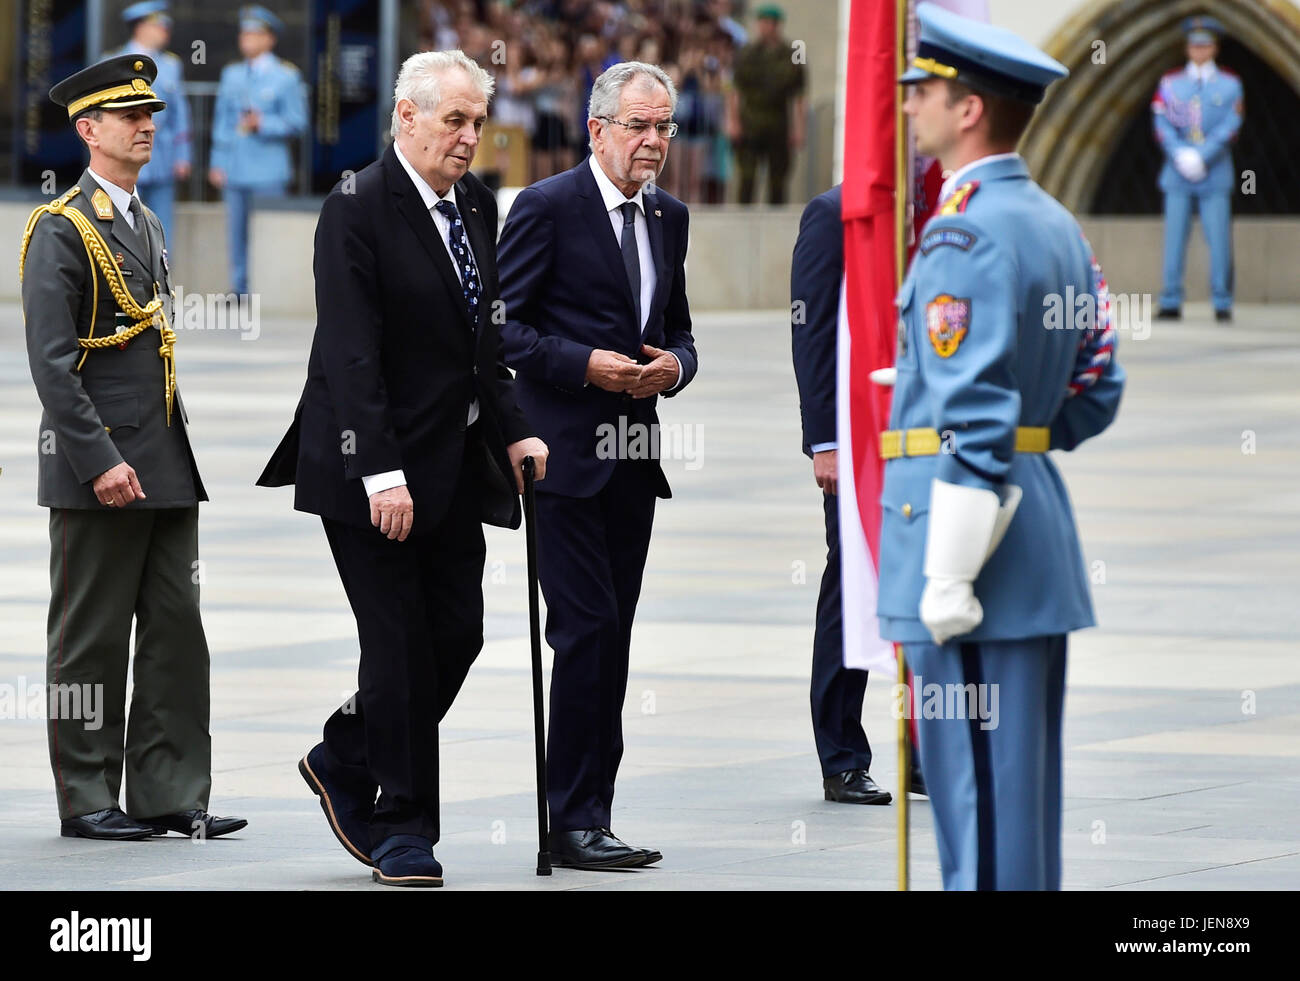 Tschechische Präsident Milos Zeman (zweiter von links) begrüßt Bundespräsident Alexander Van der Bellen (Dritter von links) bei seinem offiziellen Besuch auf der Prager Burg in Prag, Tschechische Republik, am 27. Juni 2017. (CTK Foto/römische Vondrous) Stockfoto